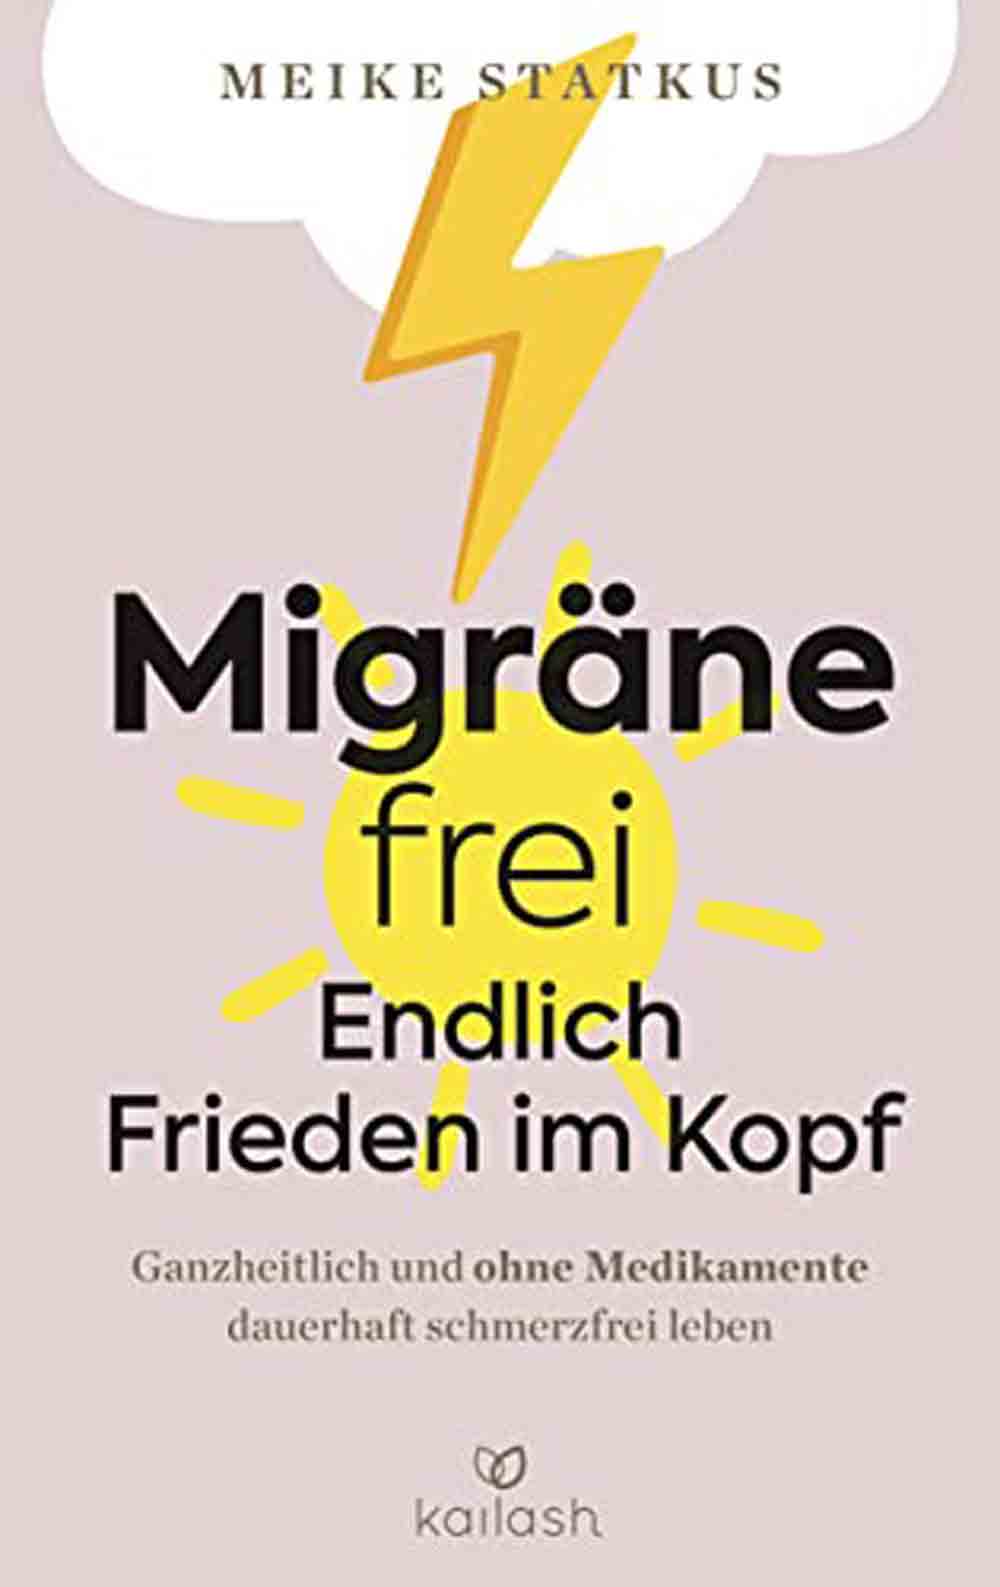 Lesetipps für Gütersloh, Meike Statkus, »Migräne frei: endlich Frieden im Kopf«